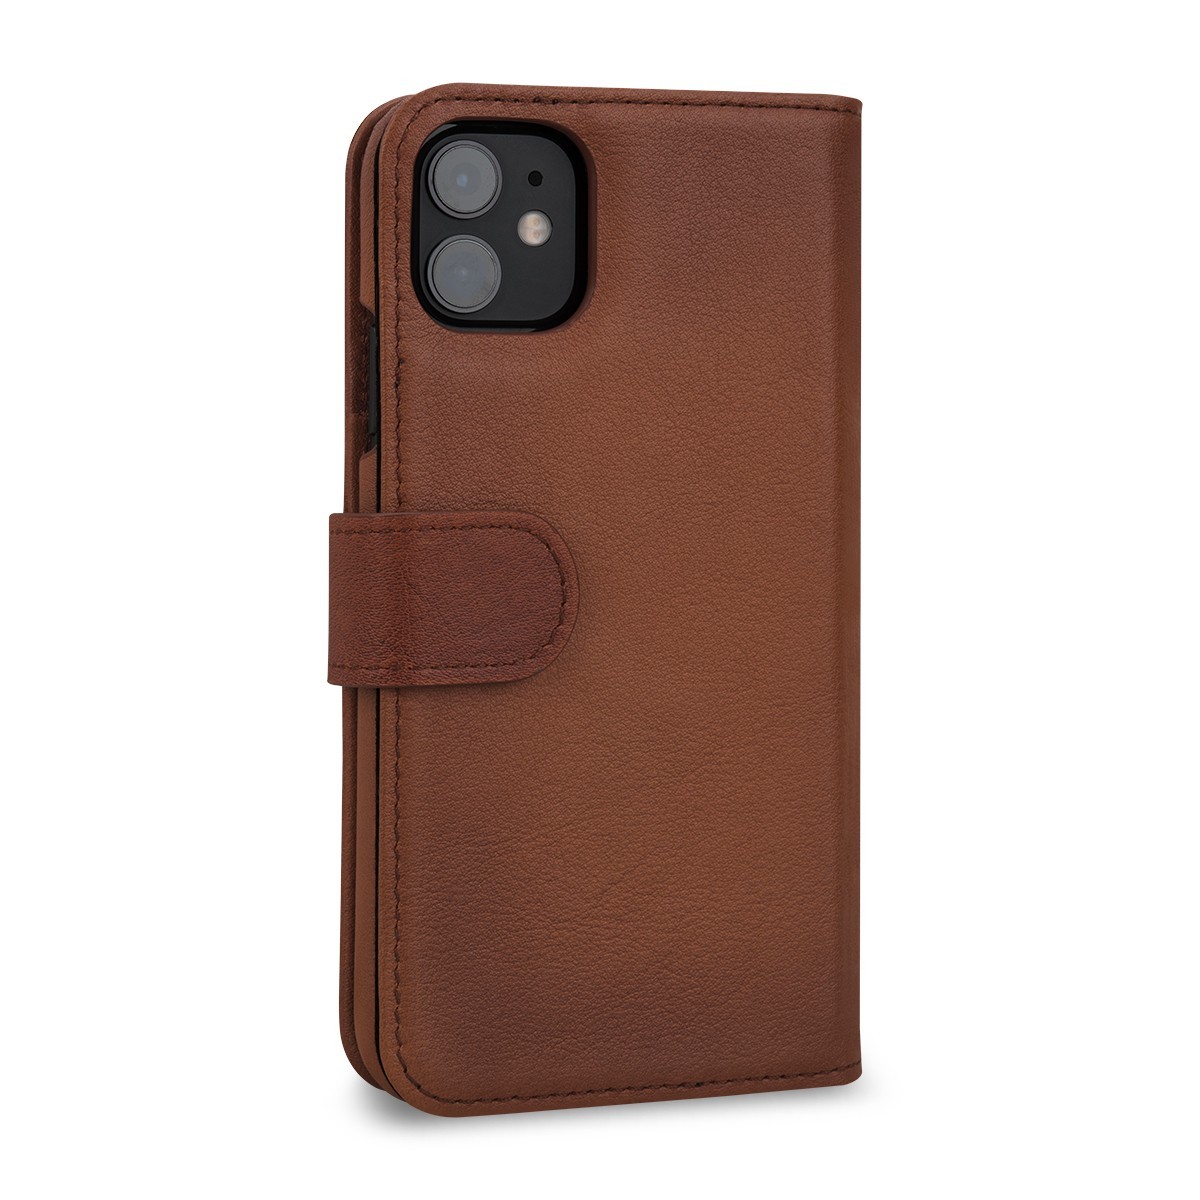 Etui compatible avec iPhone 11 porte-cartes marron en cuir véritable - Stilgut